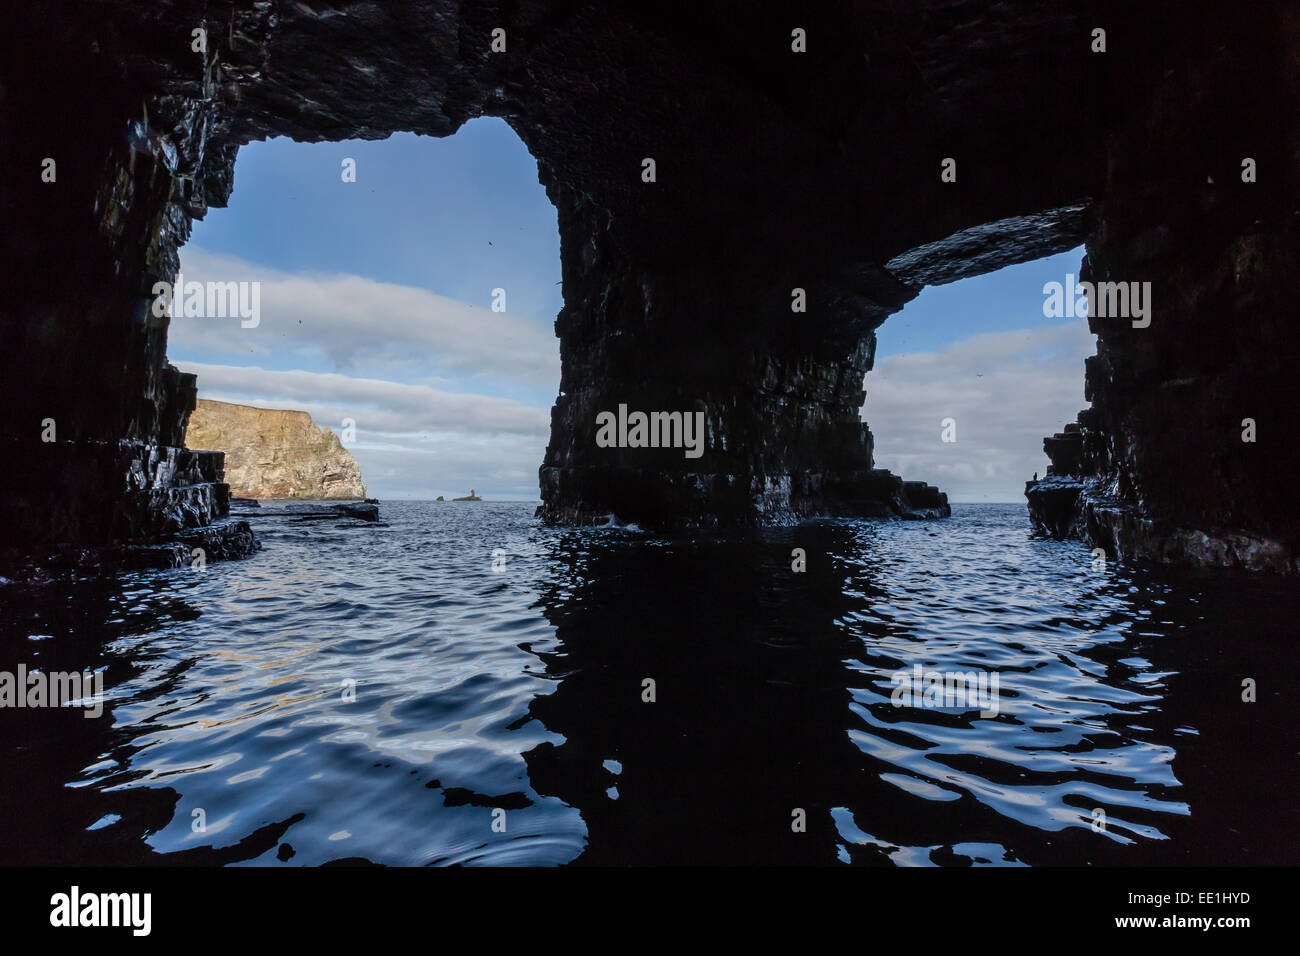 Les grottes de la mer remplie d'oiseaux nichant sur le côté sud de Bjornoya, Bear Island, Norway, Scandinavia, Europe Banque D'Images